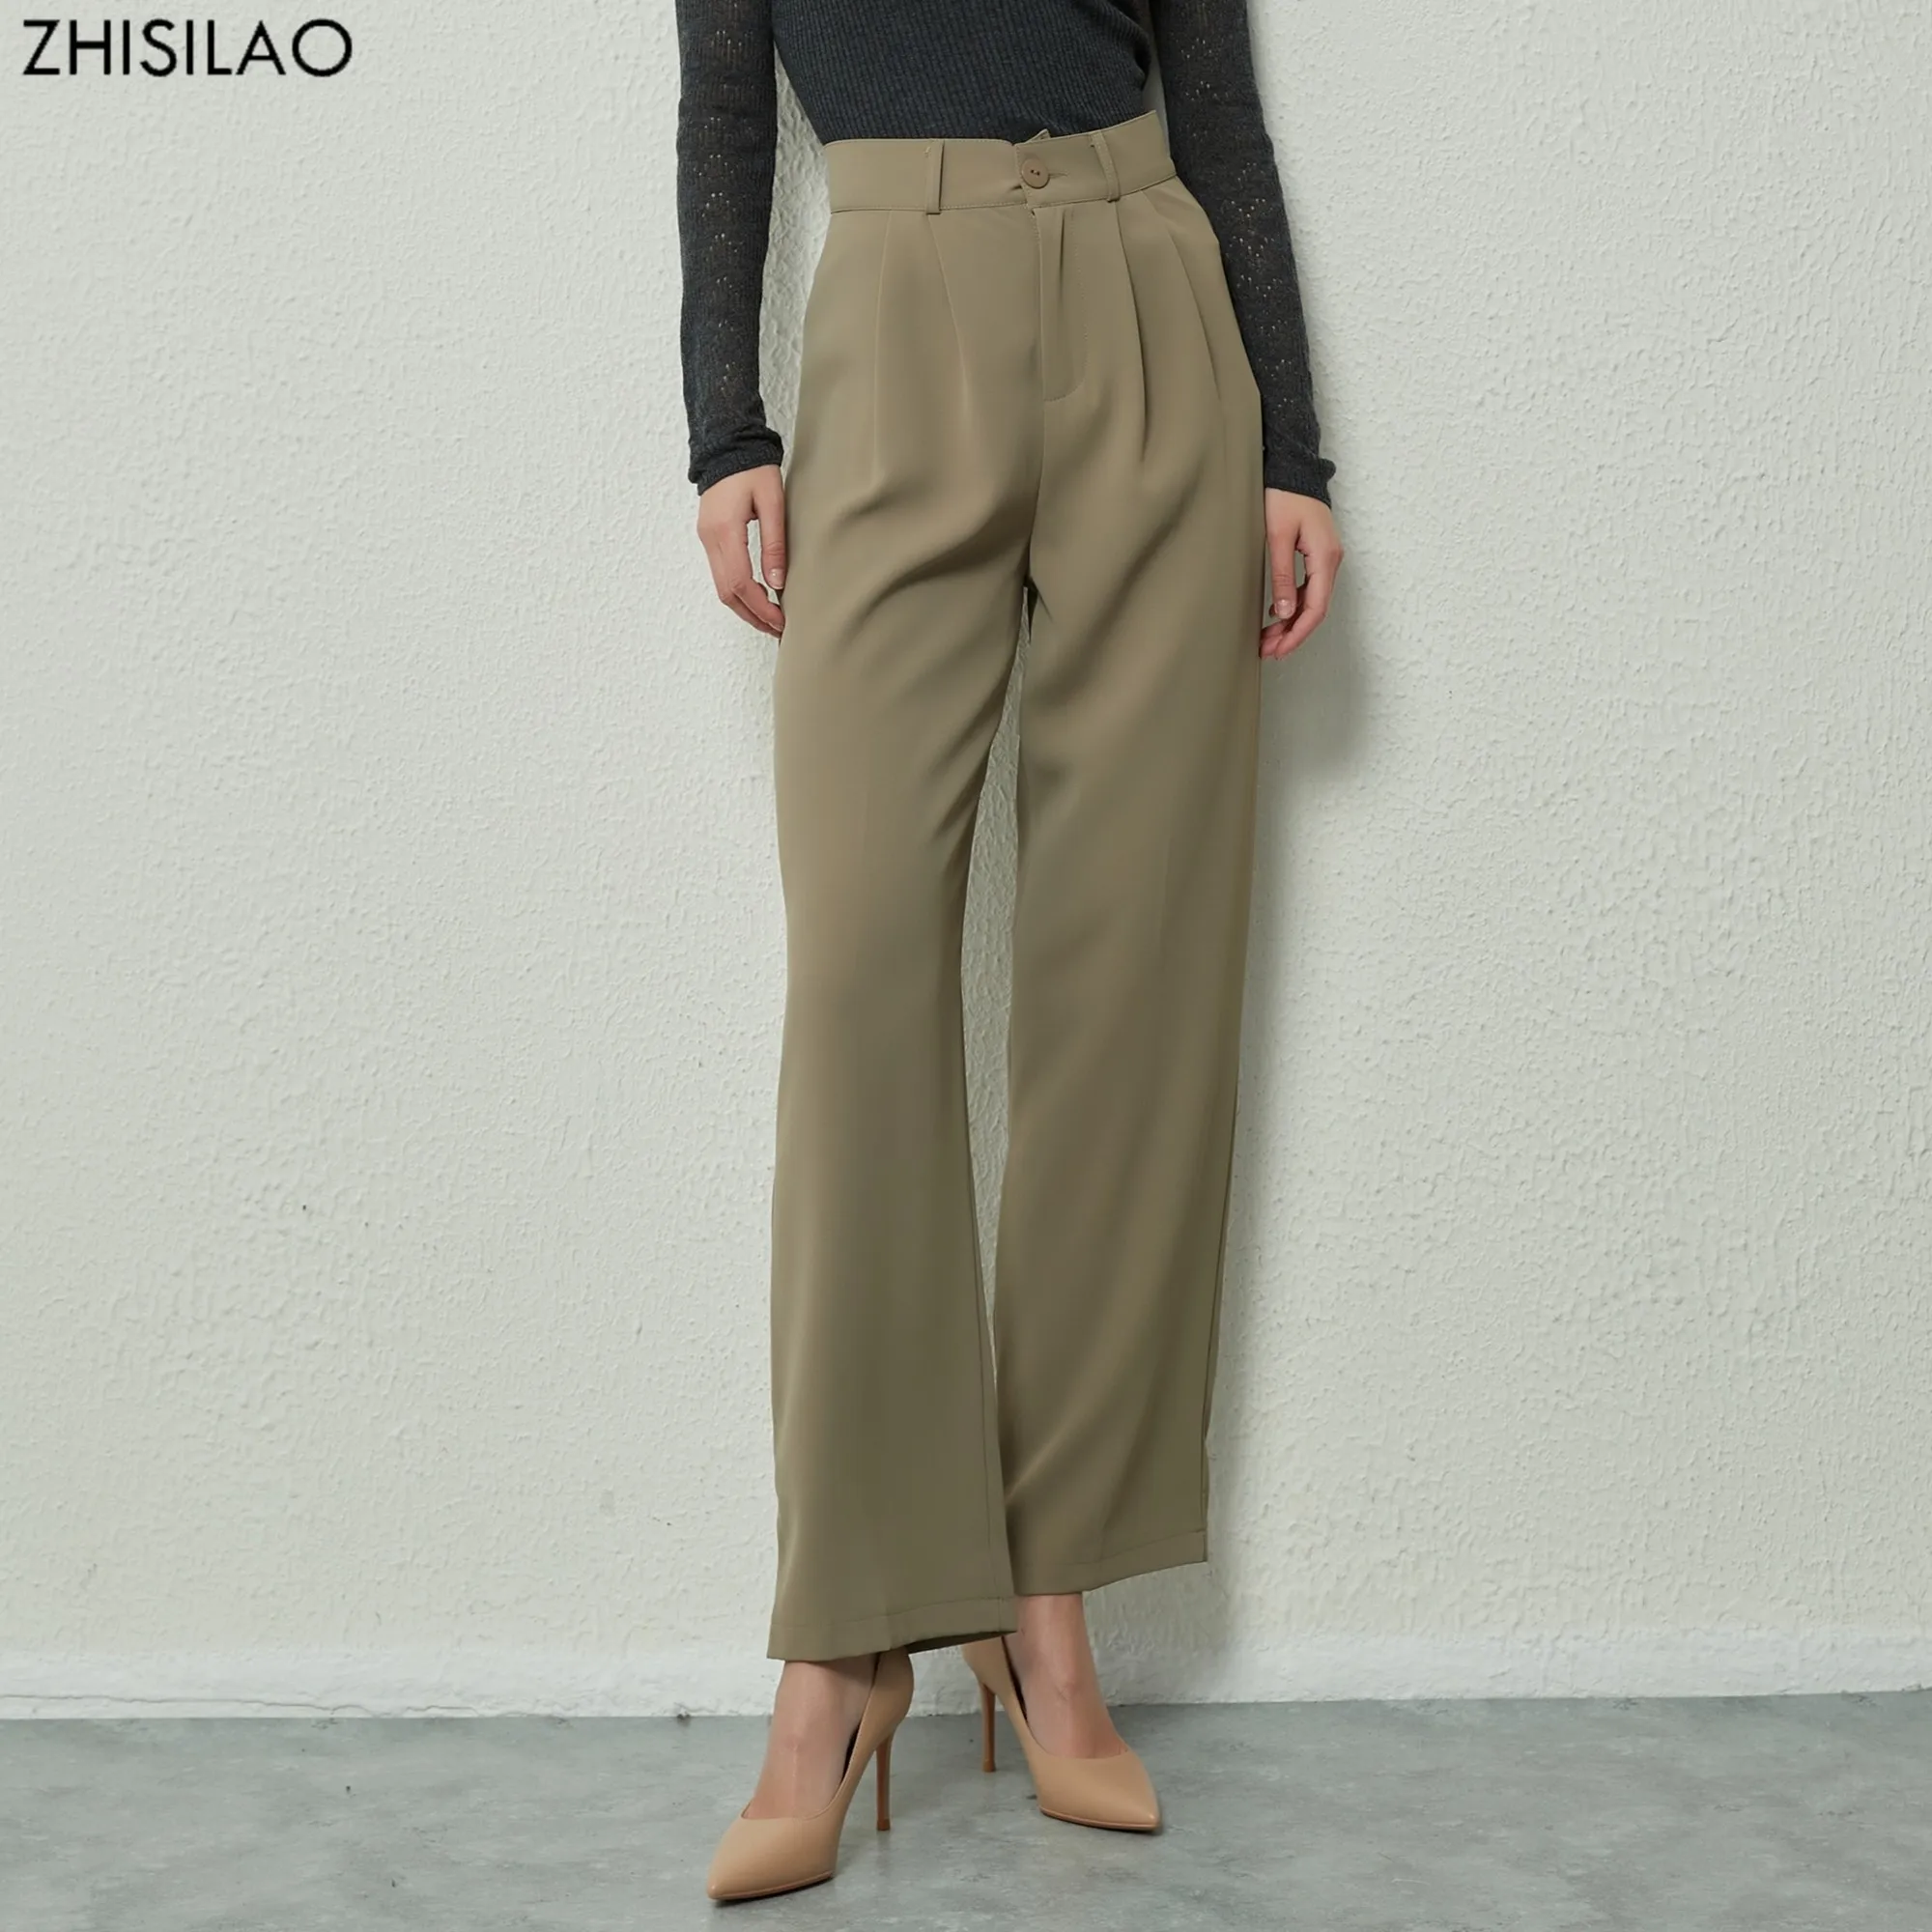 Pilt /59150/Zhisilao-uus-lai-jalg-sirge-püksid-elegantne-tahke-2_share/upload.jpeg